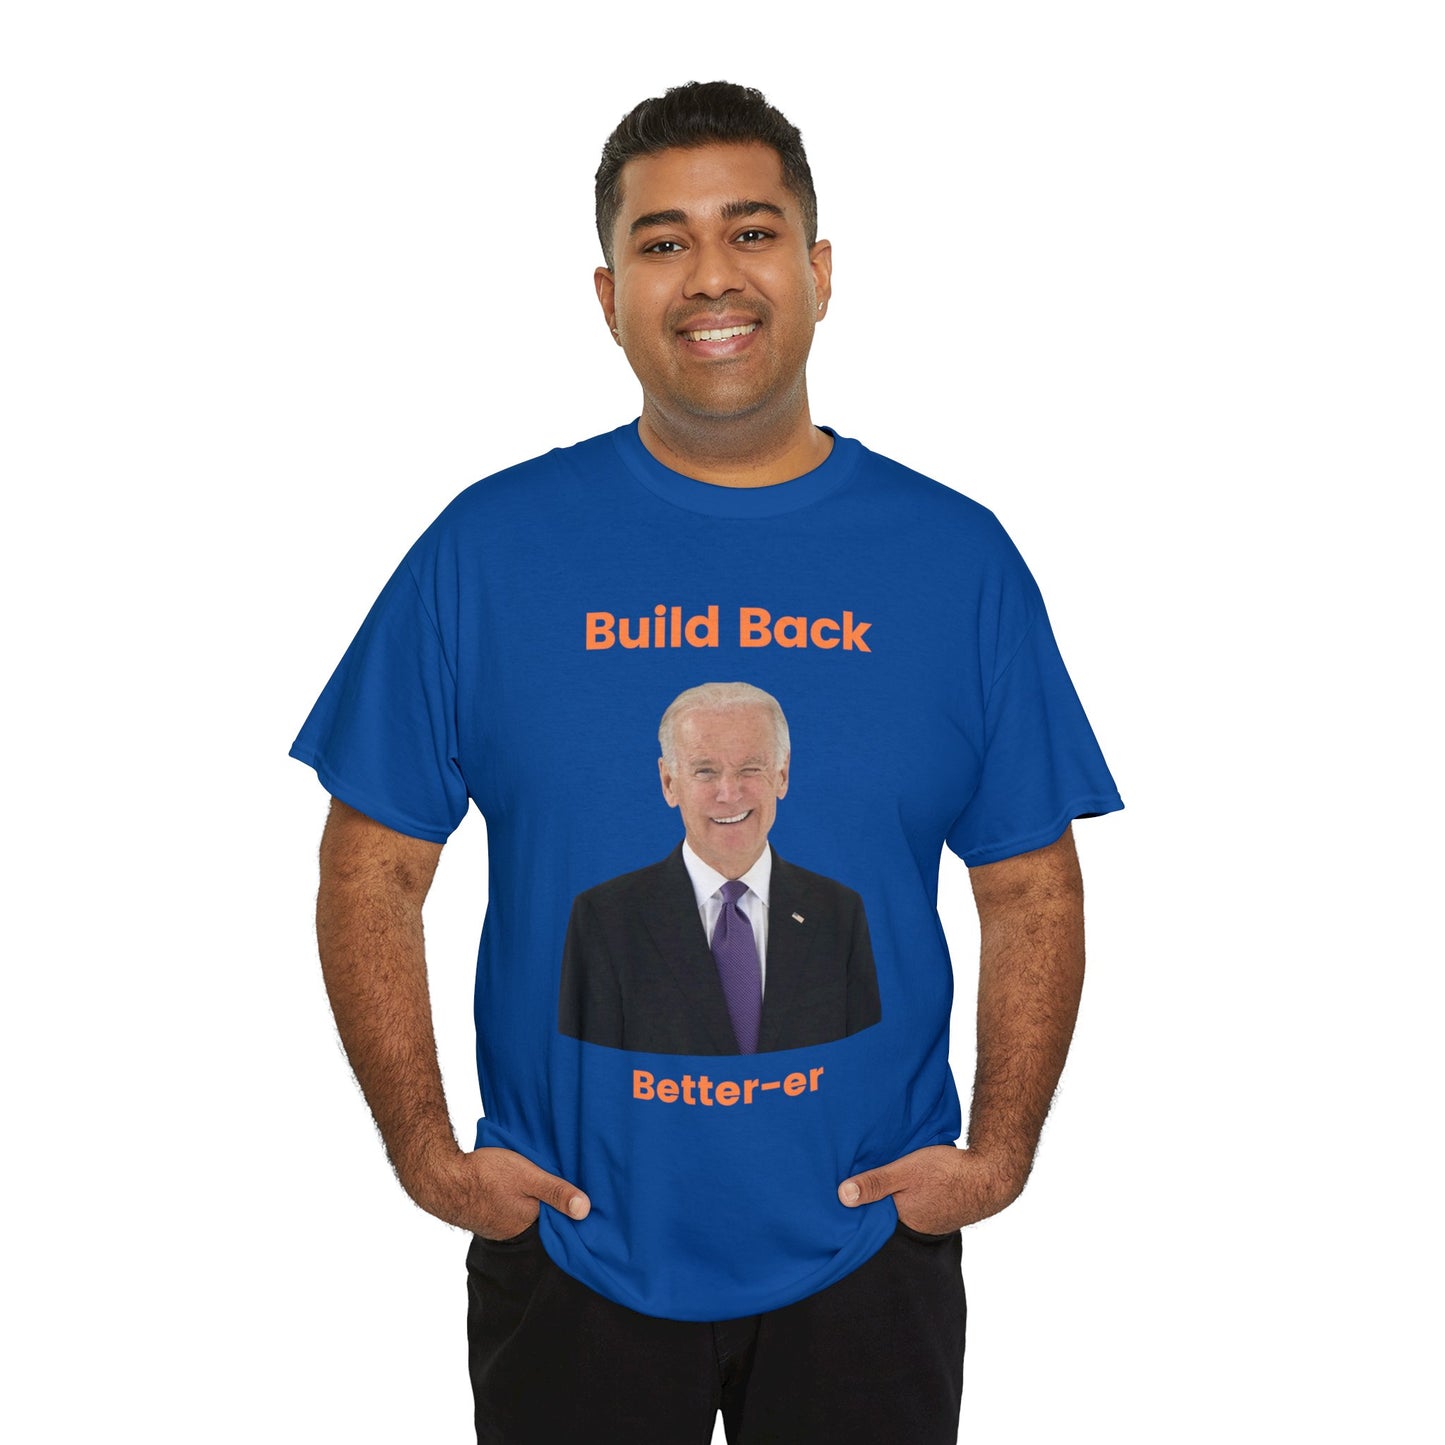 Biden - "Build Back Better-er"